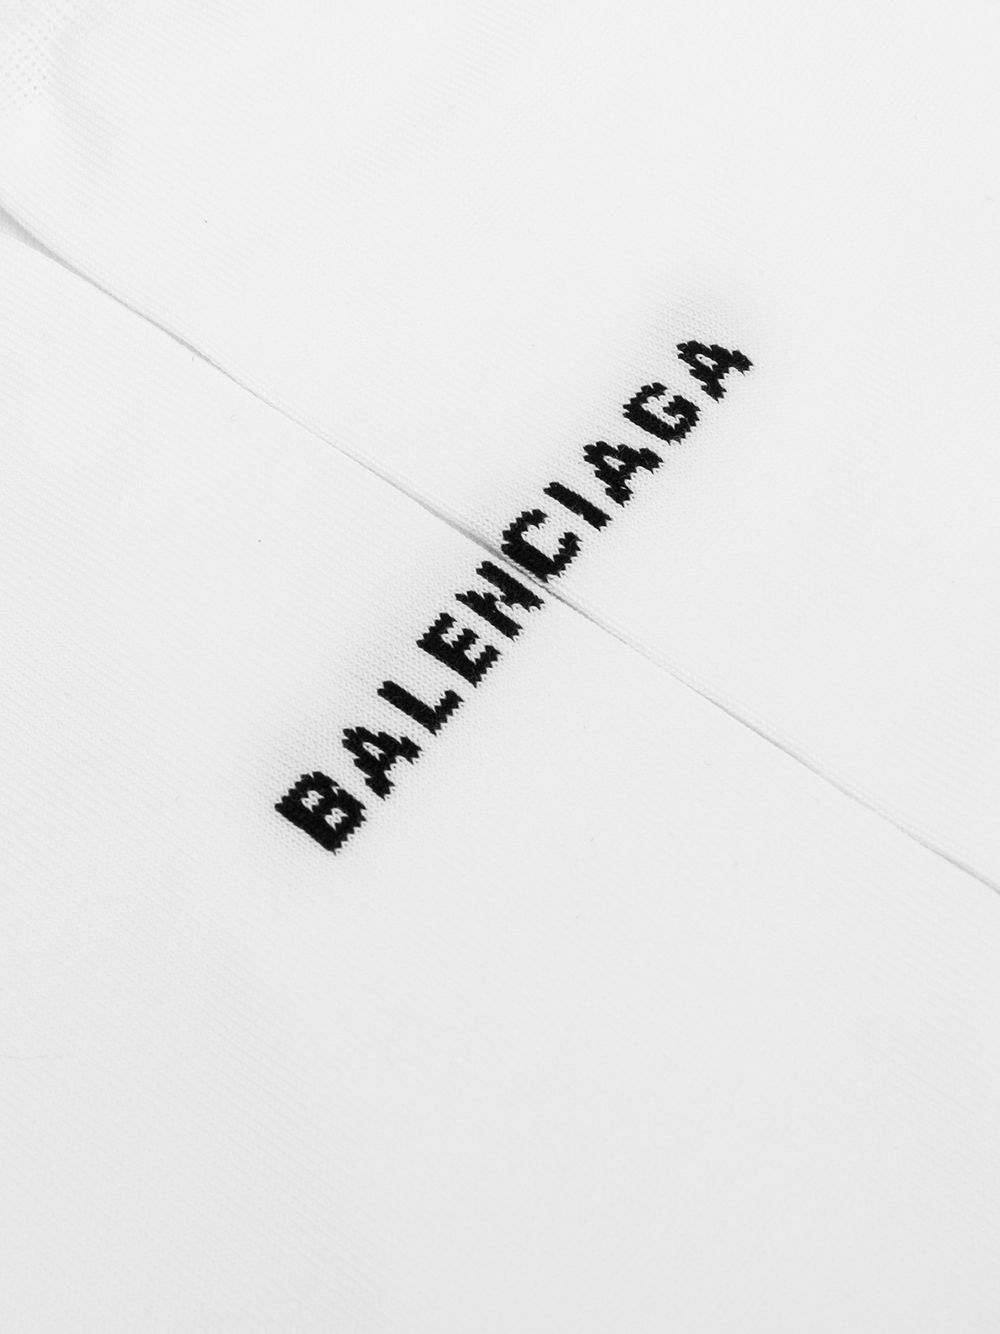 Giày thể thao thời trang Giày thể thao Balenciaga  png tải về  Miễn phí  trong suốt Giày Dép png Tải về